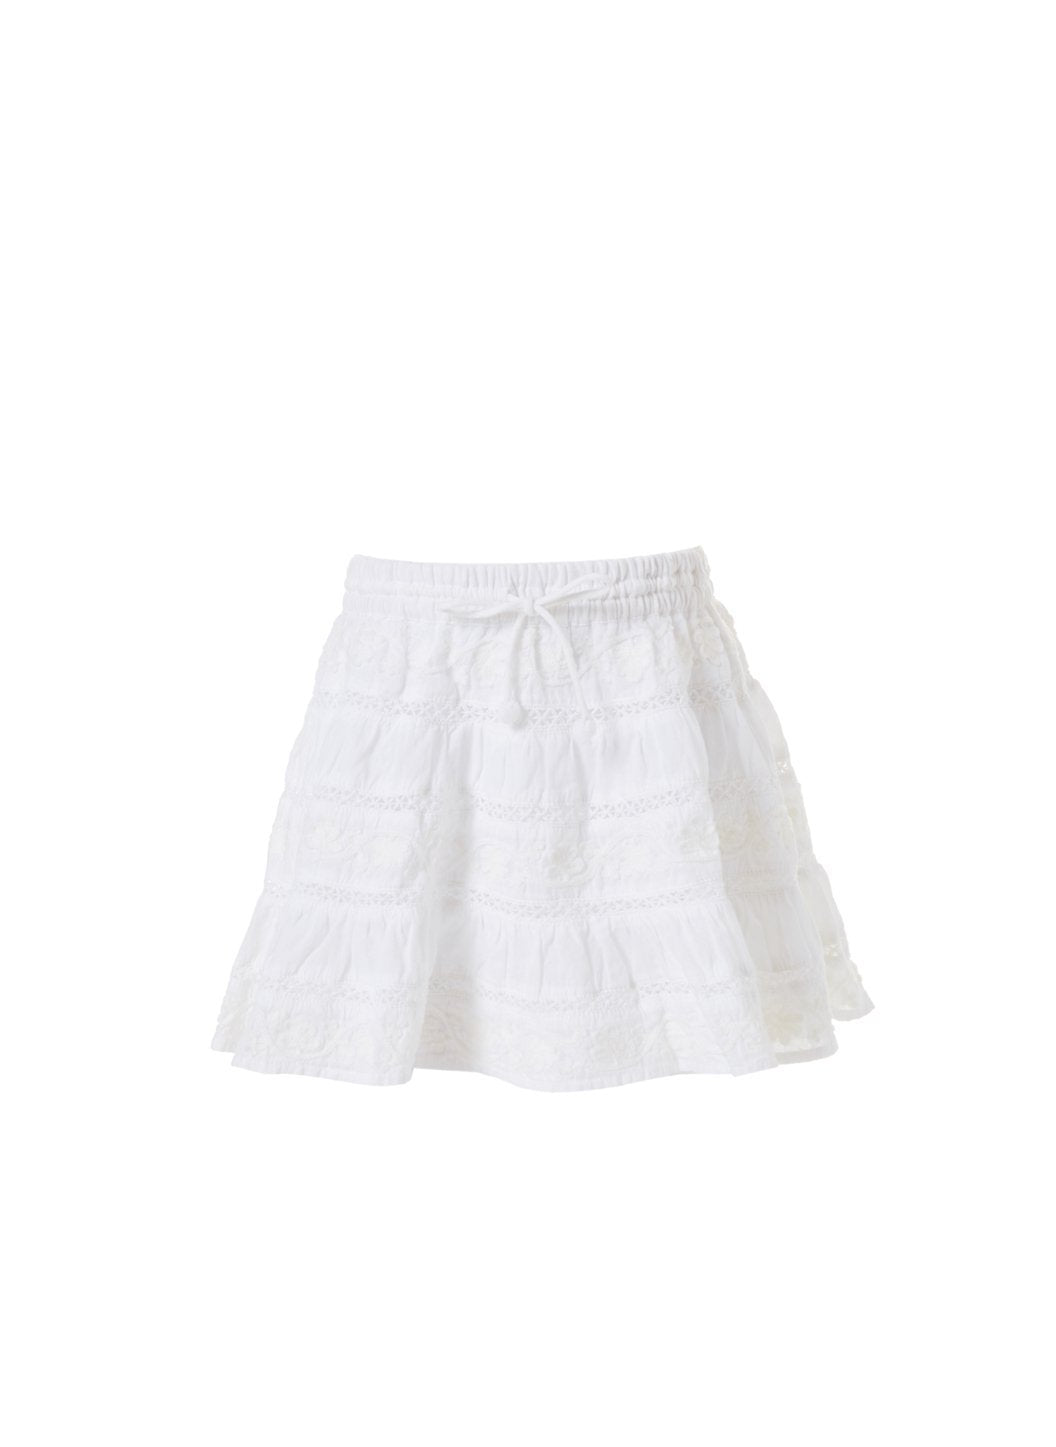 baby anita white skirt 2019